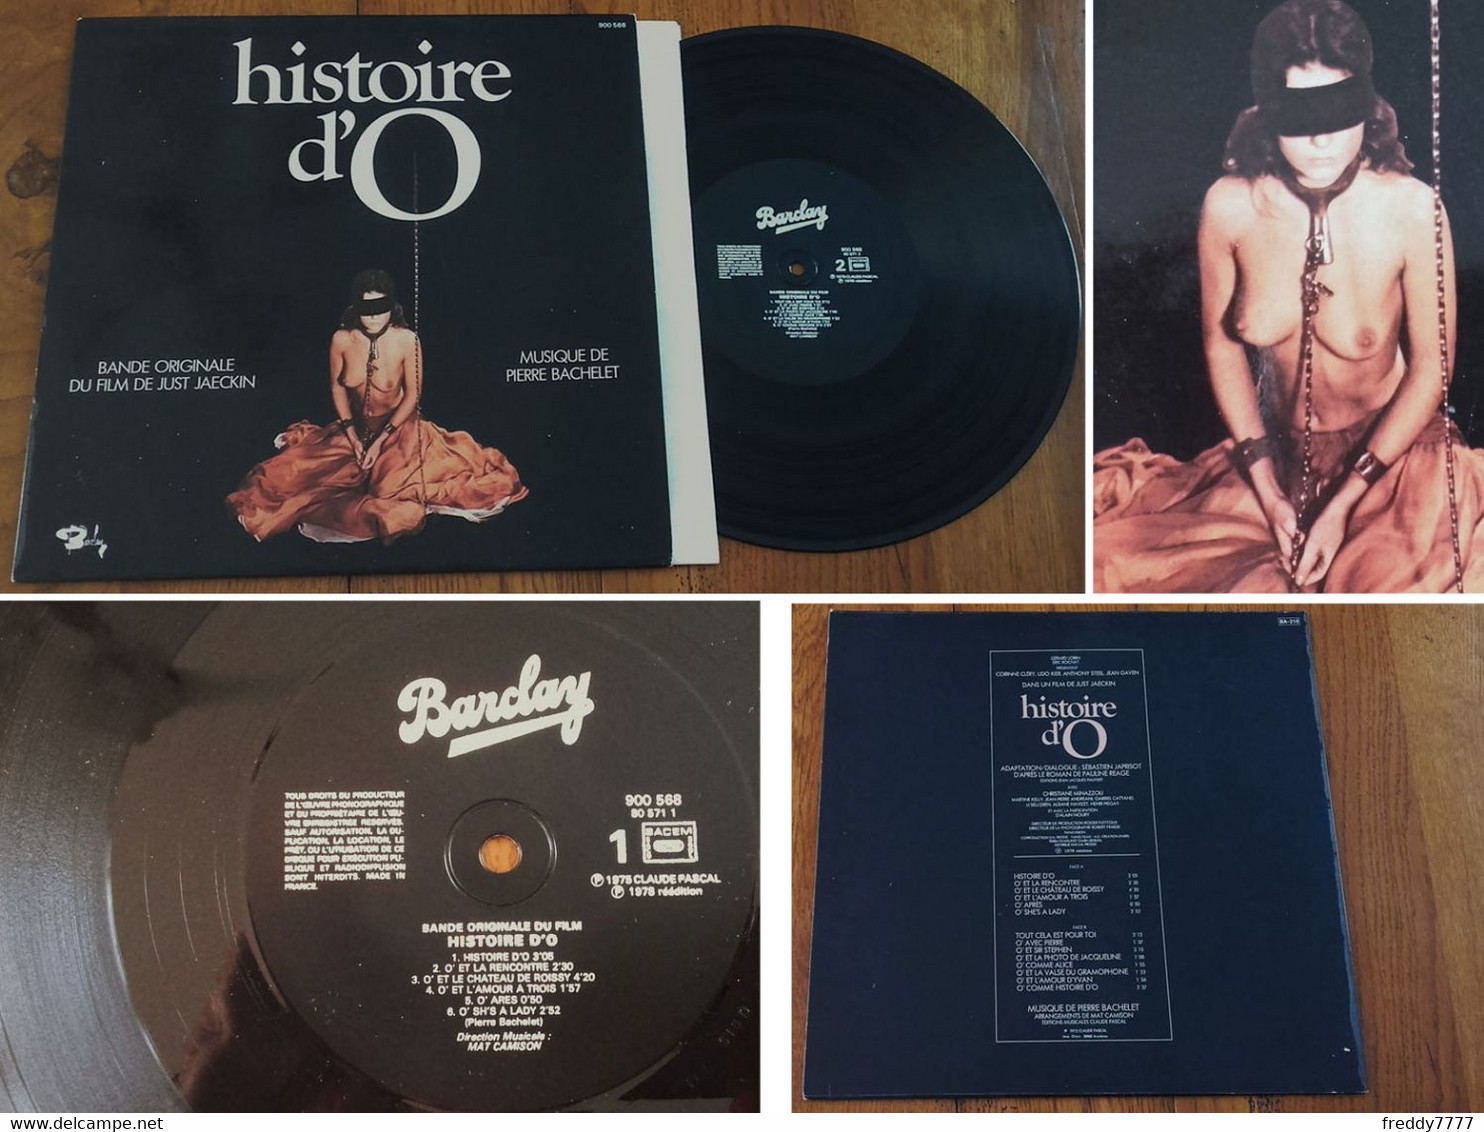 RARE French LP 33t RPM (12") "HISTOIRE D'O" (Sexy P/s, 1978) - Soundtracks, Film Music